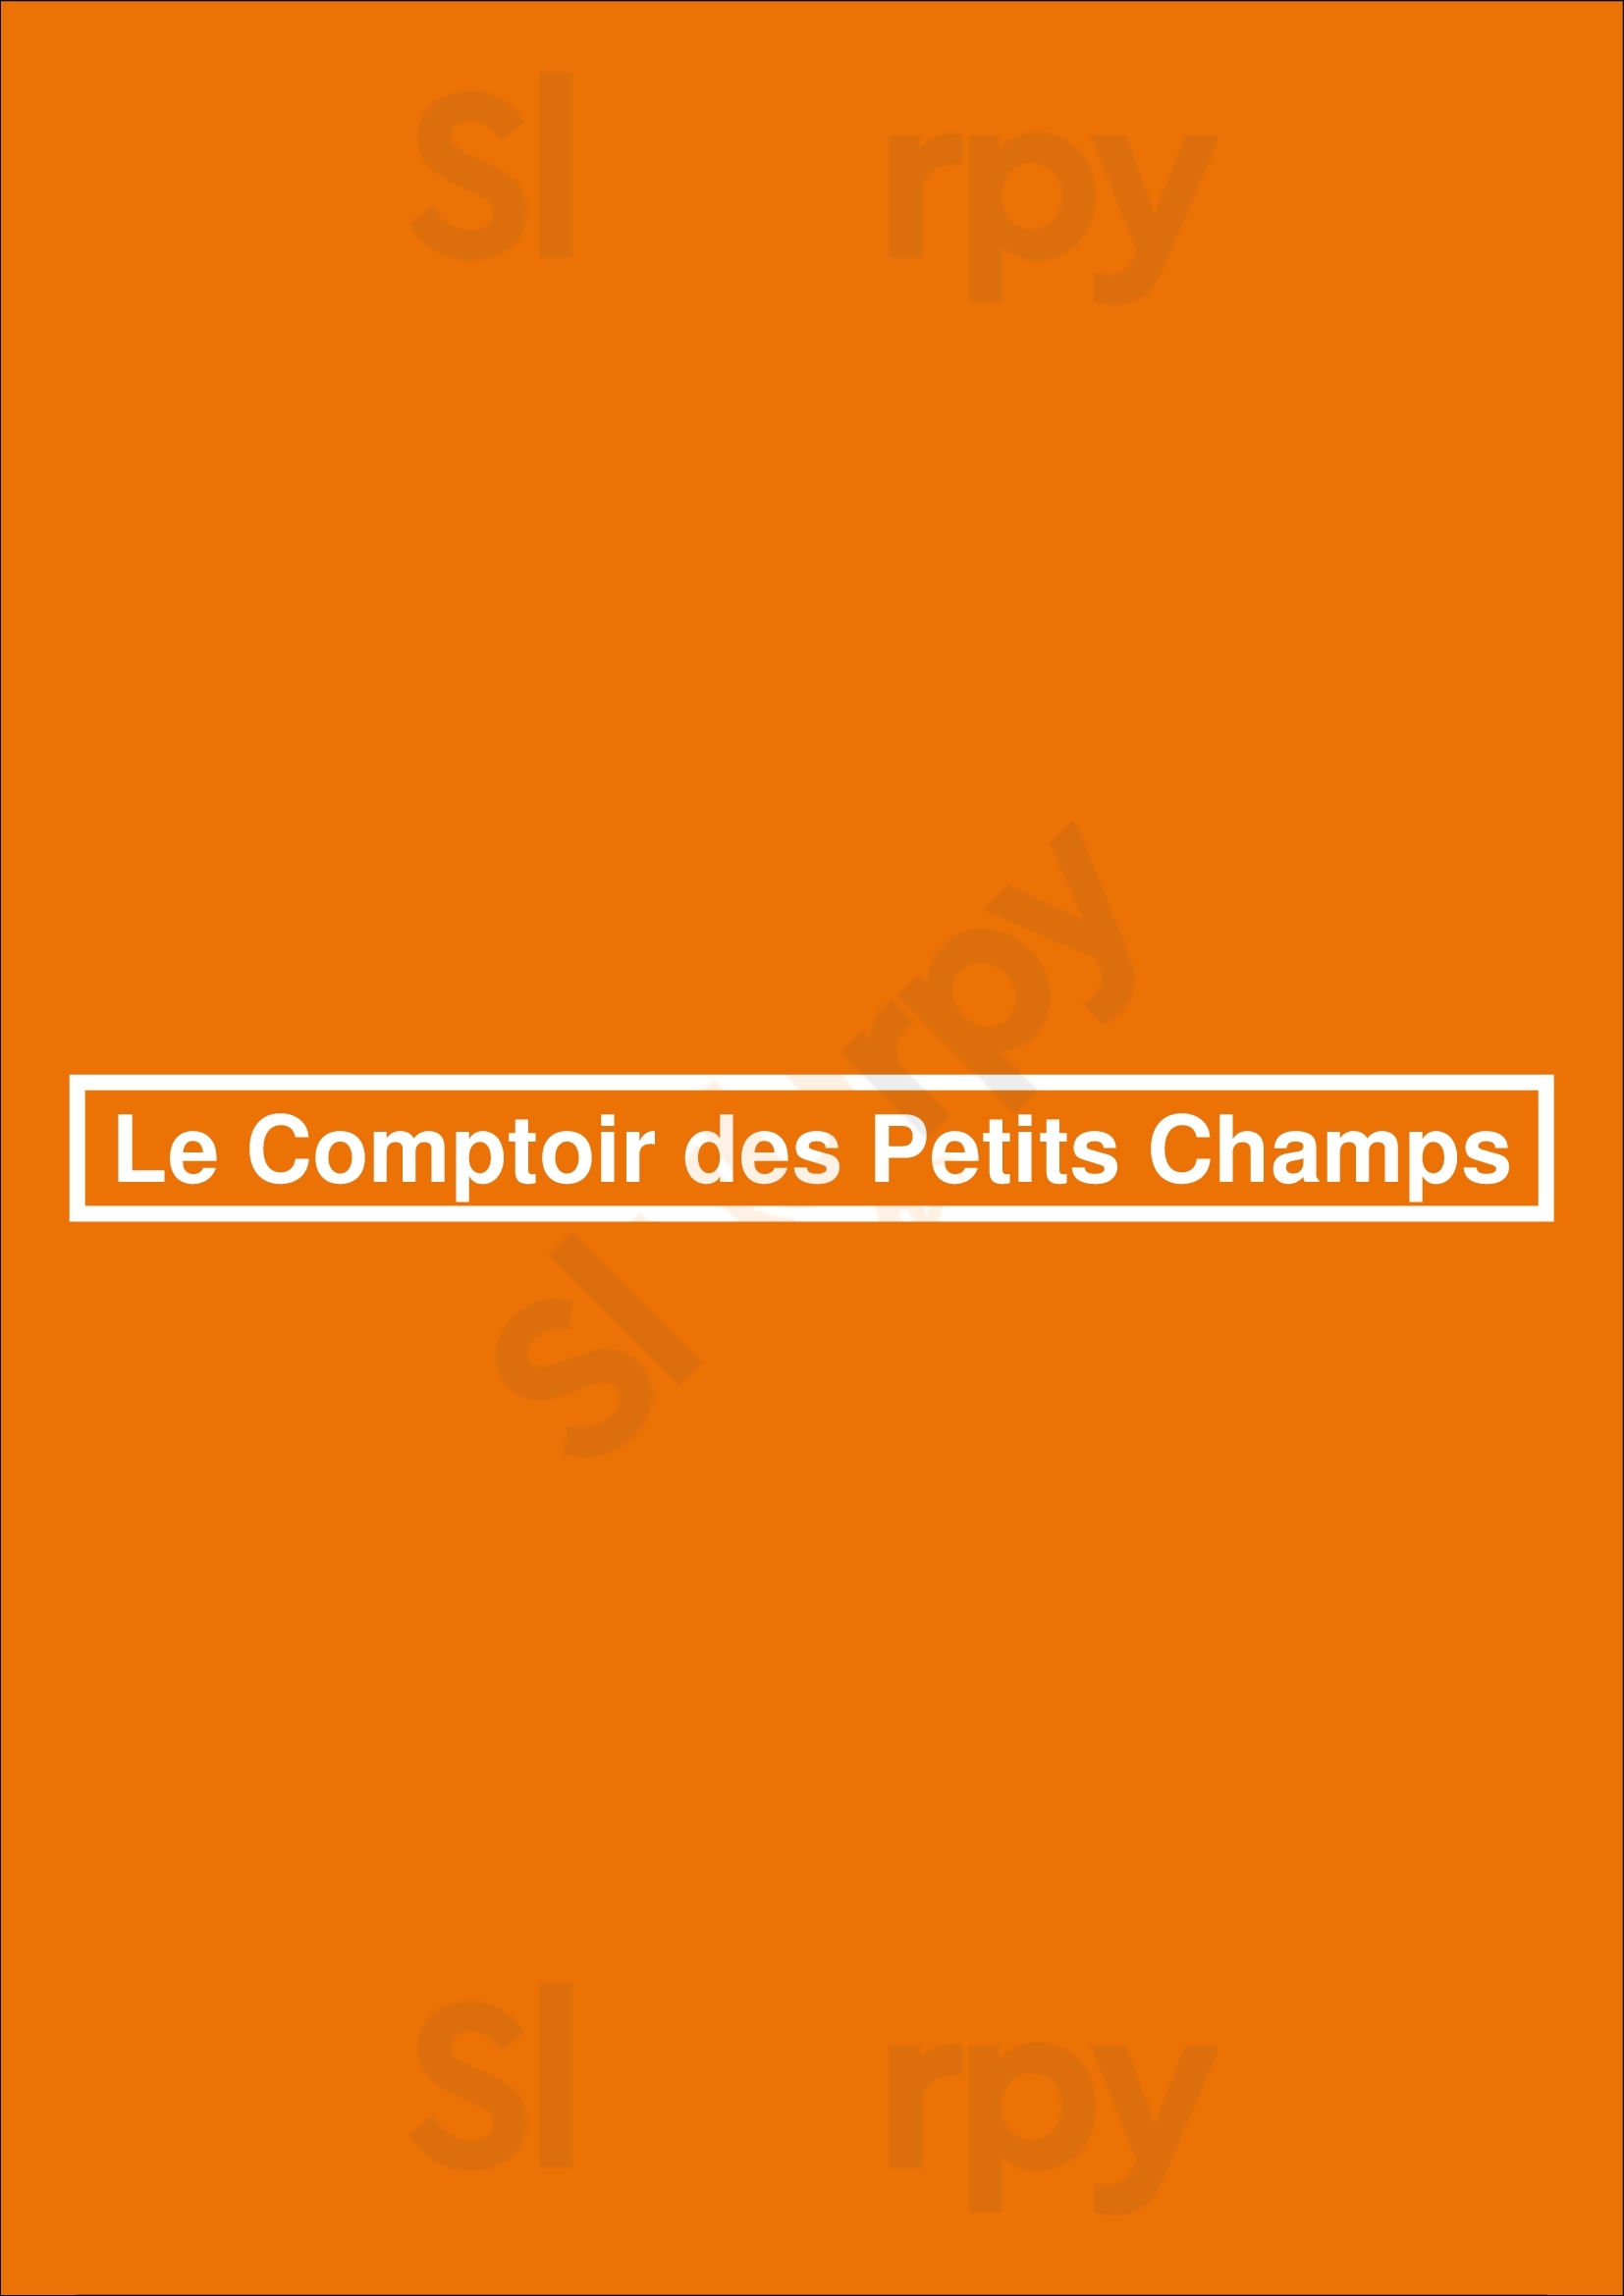 Le Comptoir Des Petits Champs Paris Menu - 1